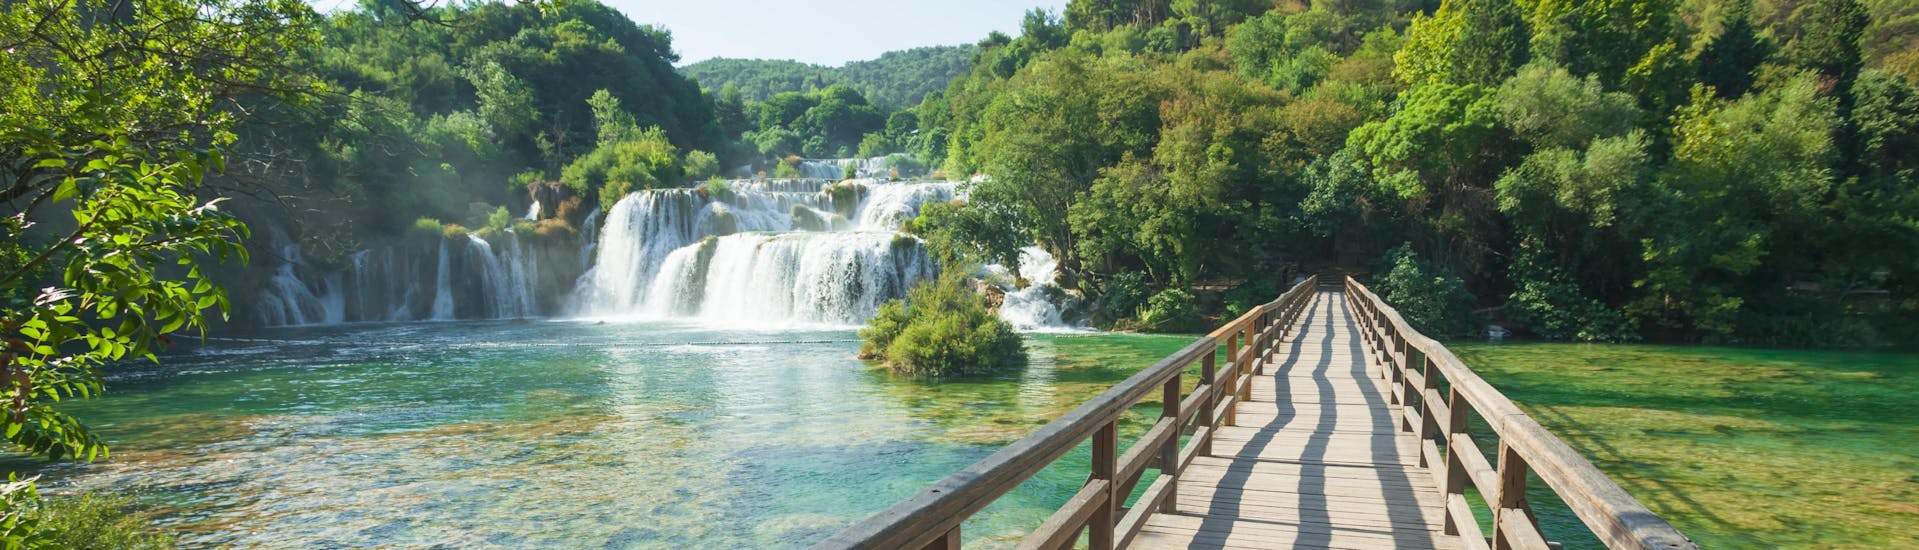 Foto van de beroemde watervallen van Krka Nationaal Park in Kroatië.